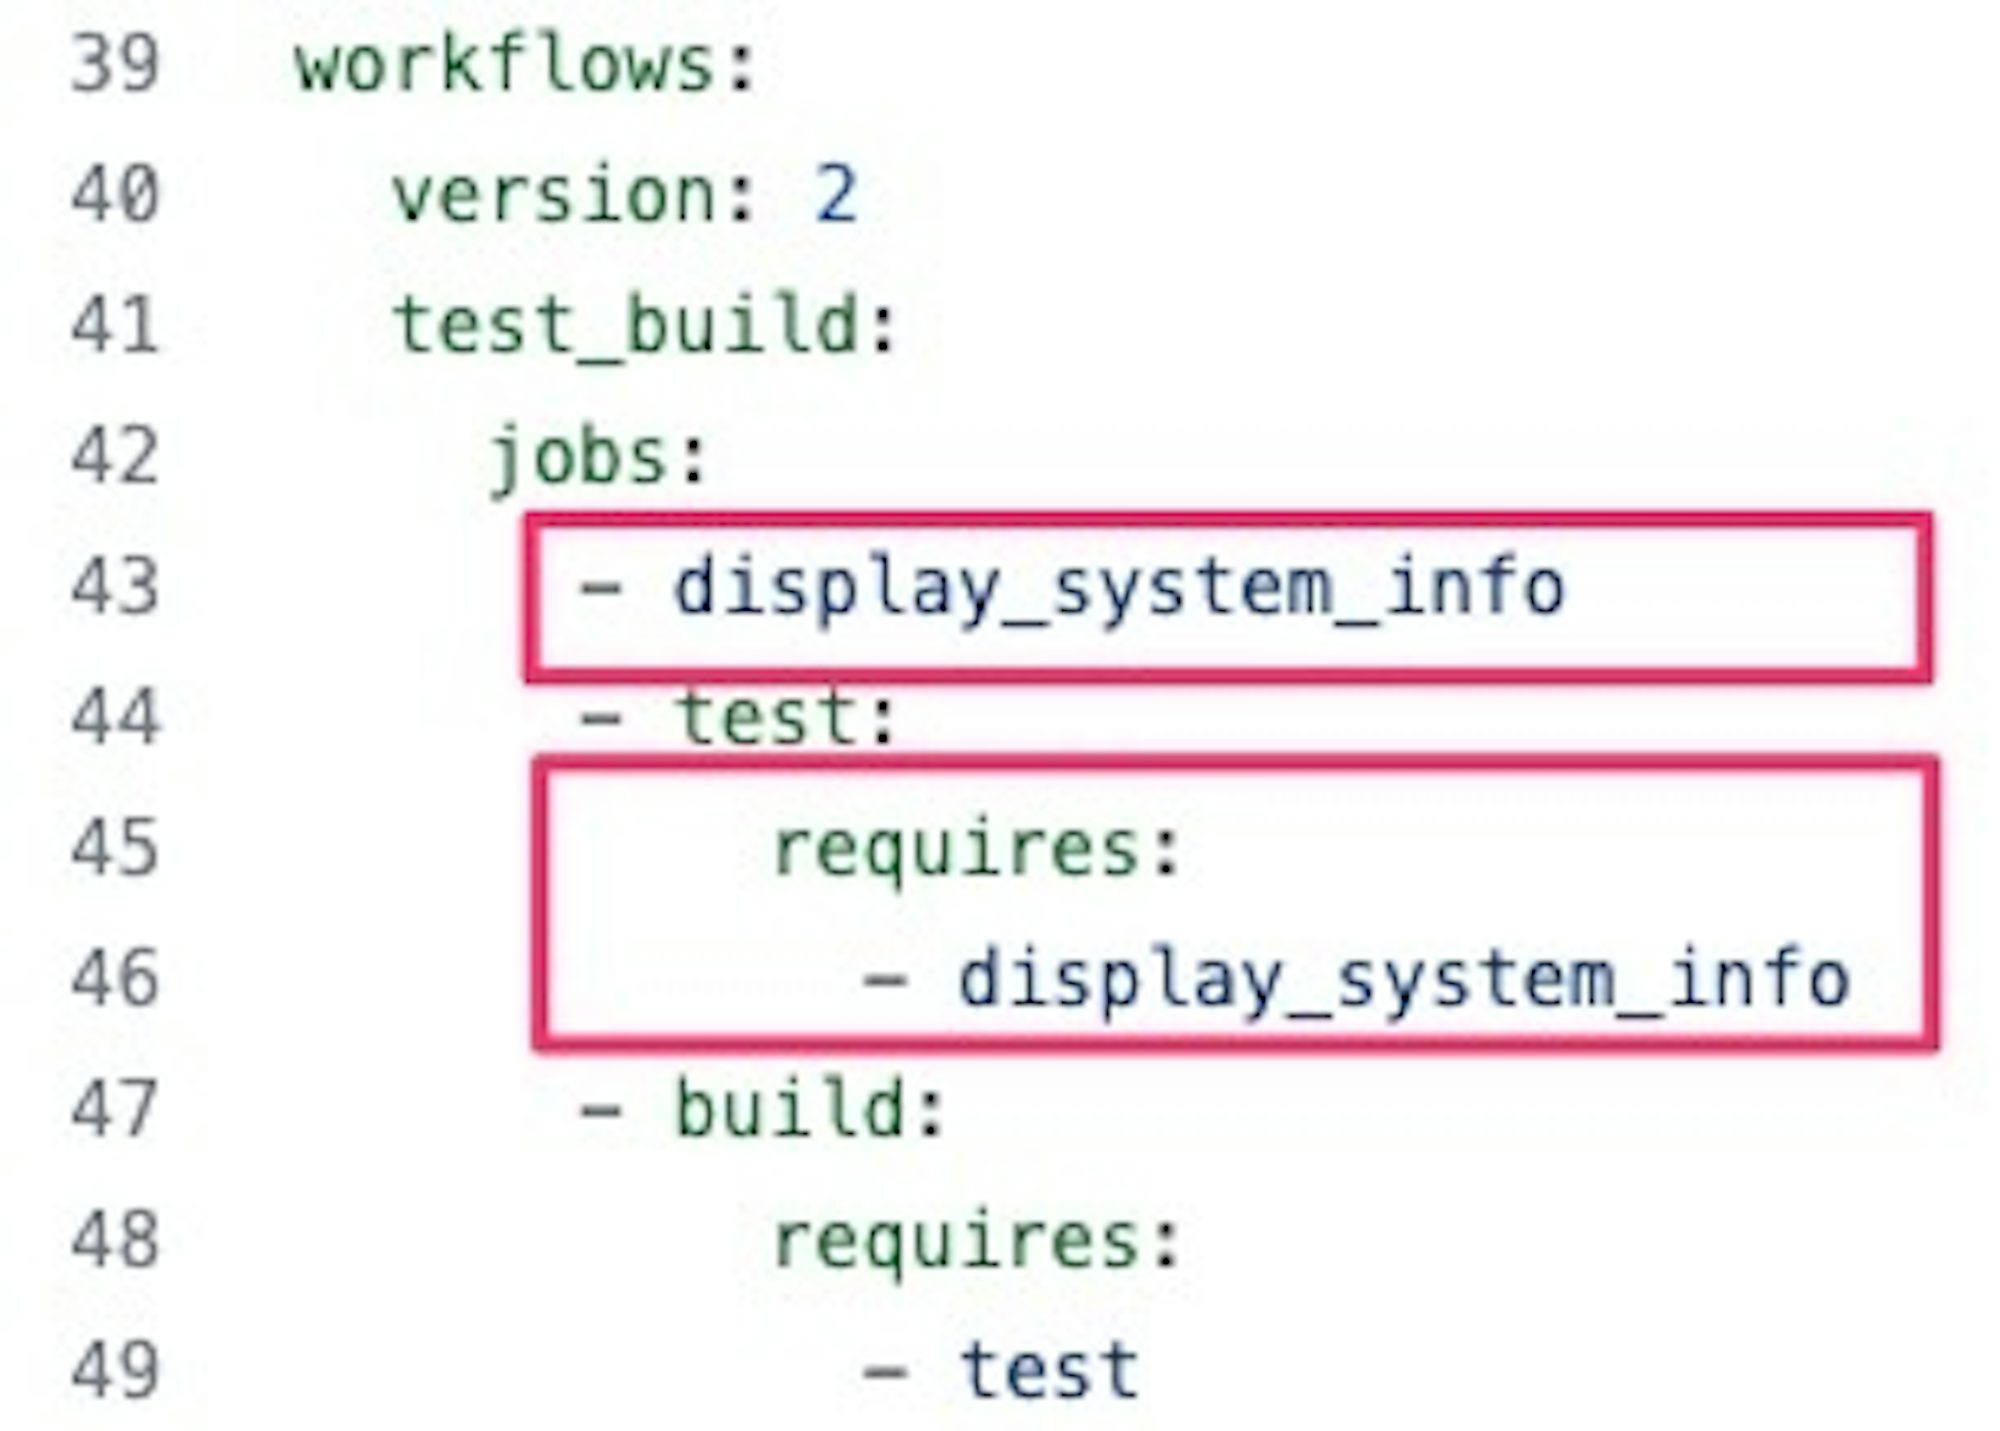 test_buildワークフローのjobsの記述の追加